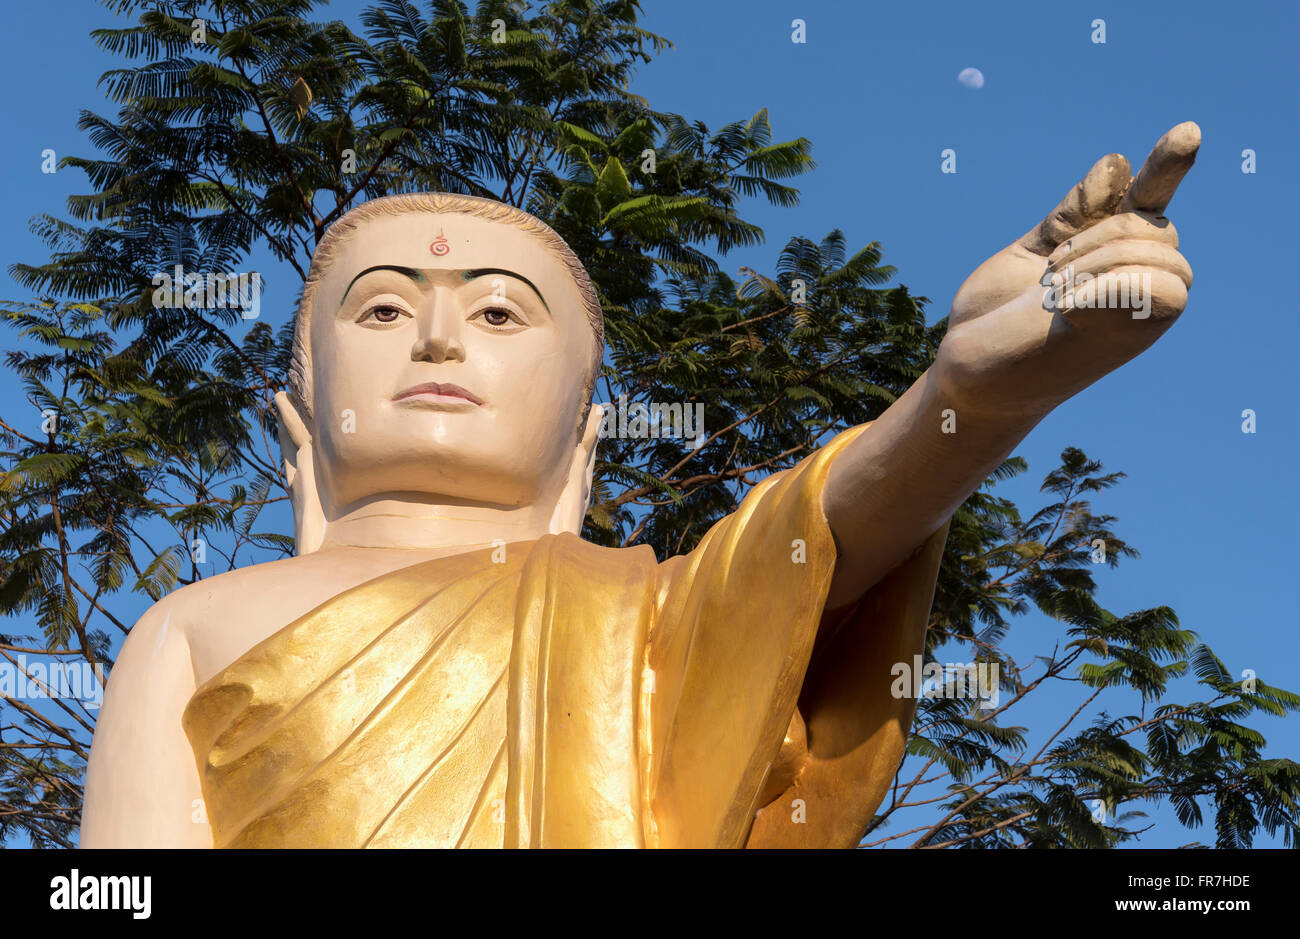 Estatua del Buda con brazo extendido y señalando con el dedo, Naung Daw Gyi Mya Tha Lyaung, Bago, Birmania (Myanmar) Foto de stock